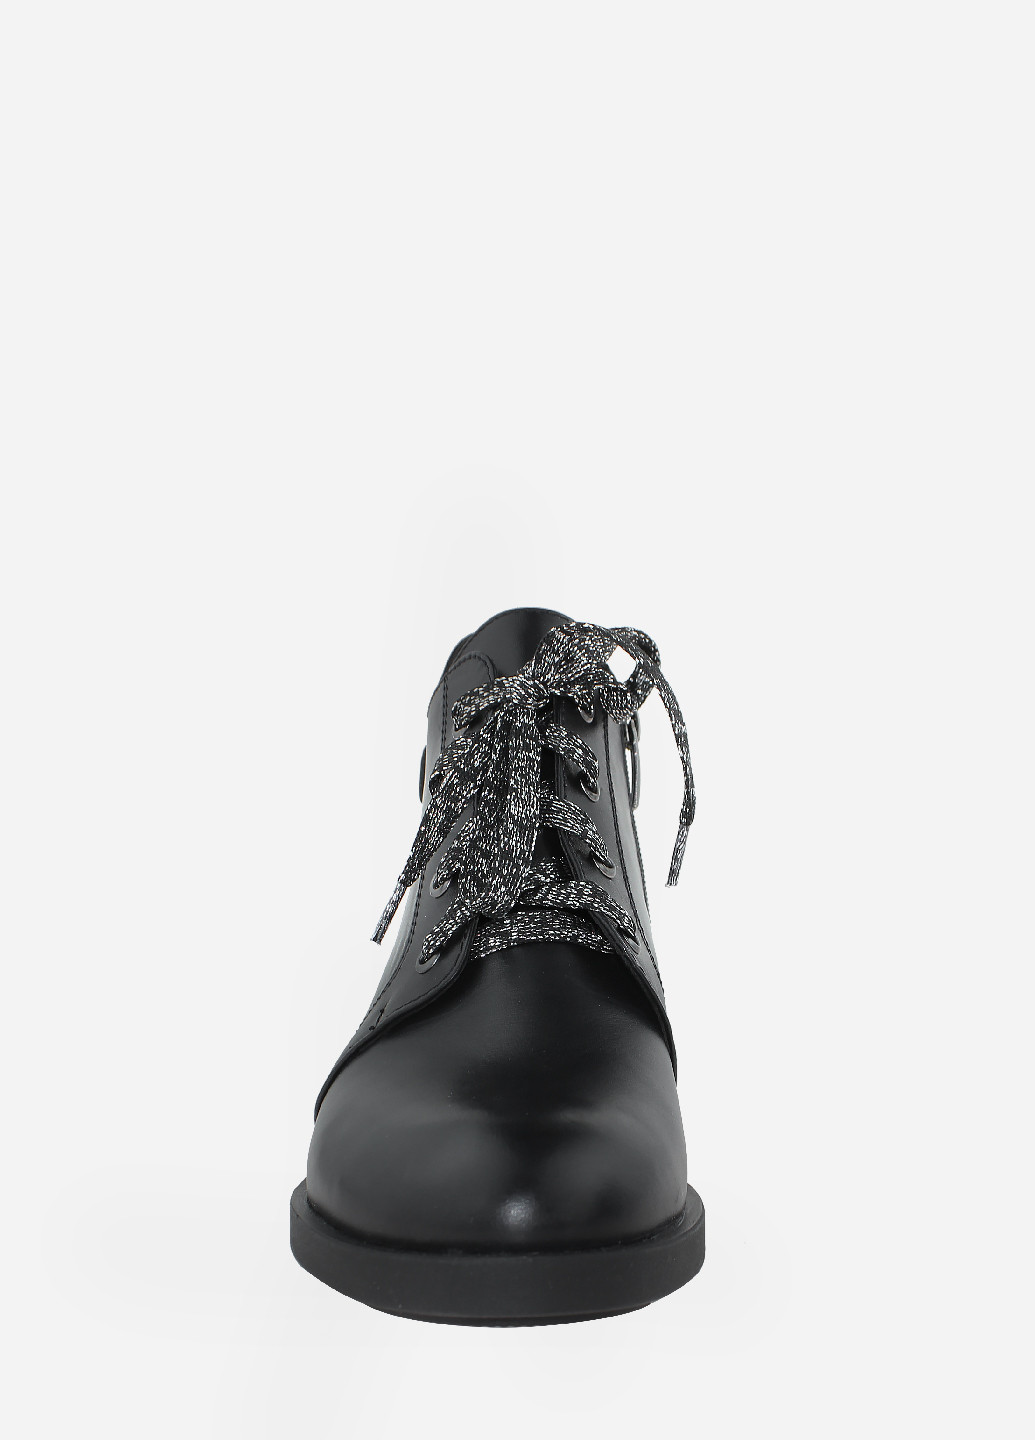 Осенние ботинки rd831-1 черный Digsi